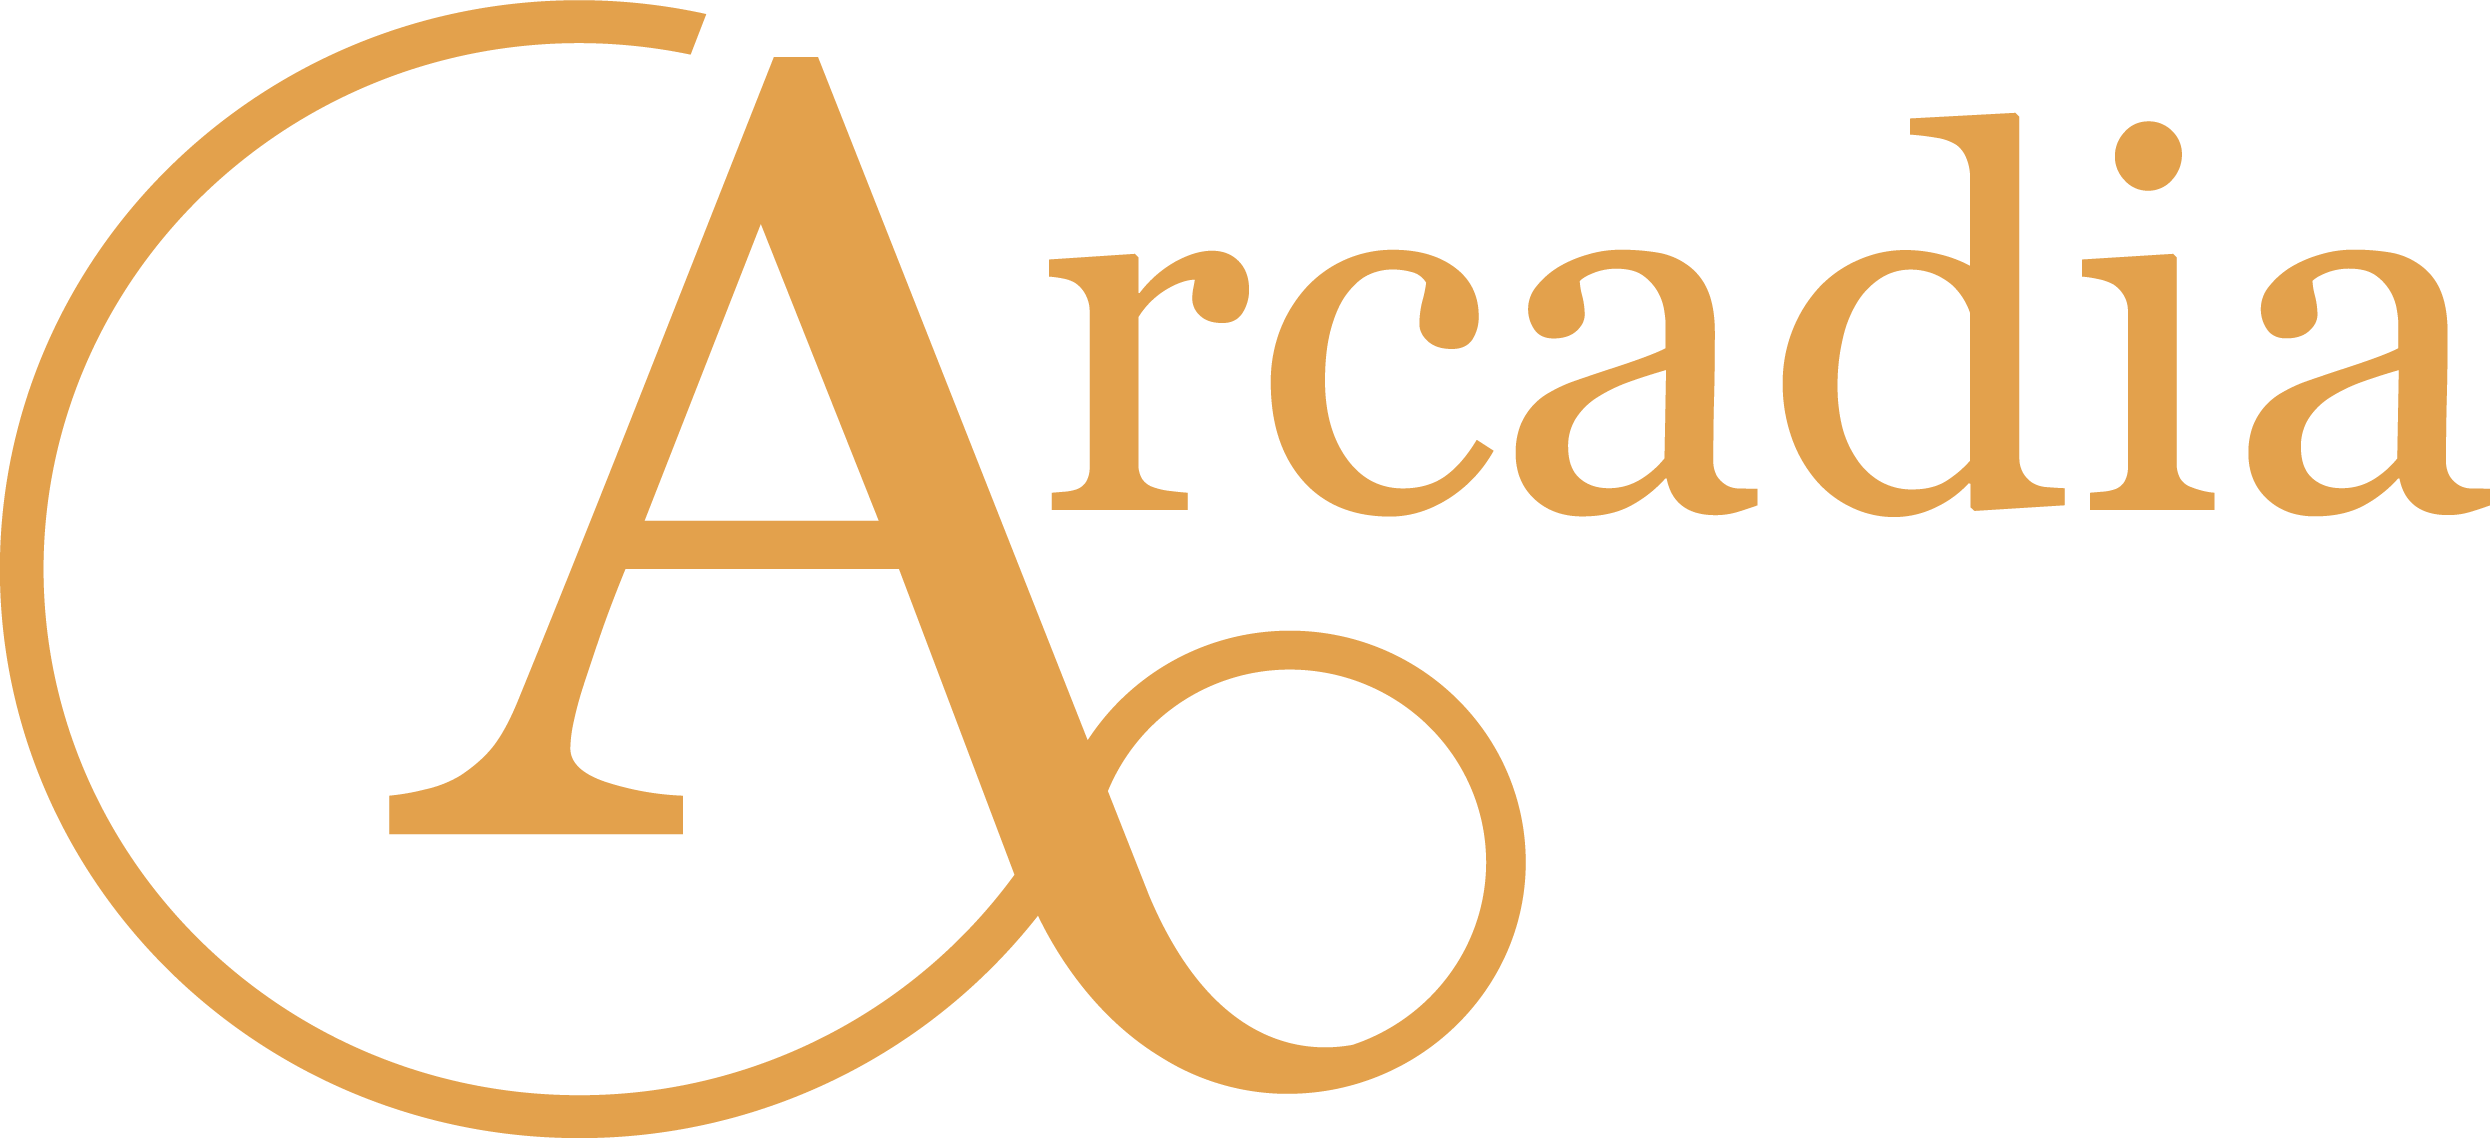 Arcadia | Environment & Society Portal